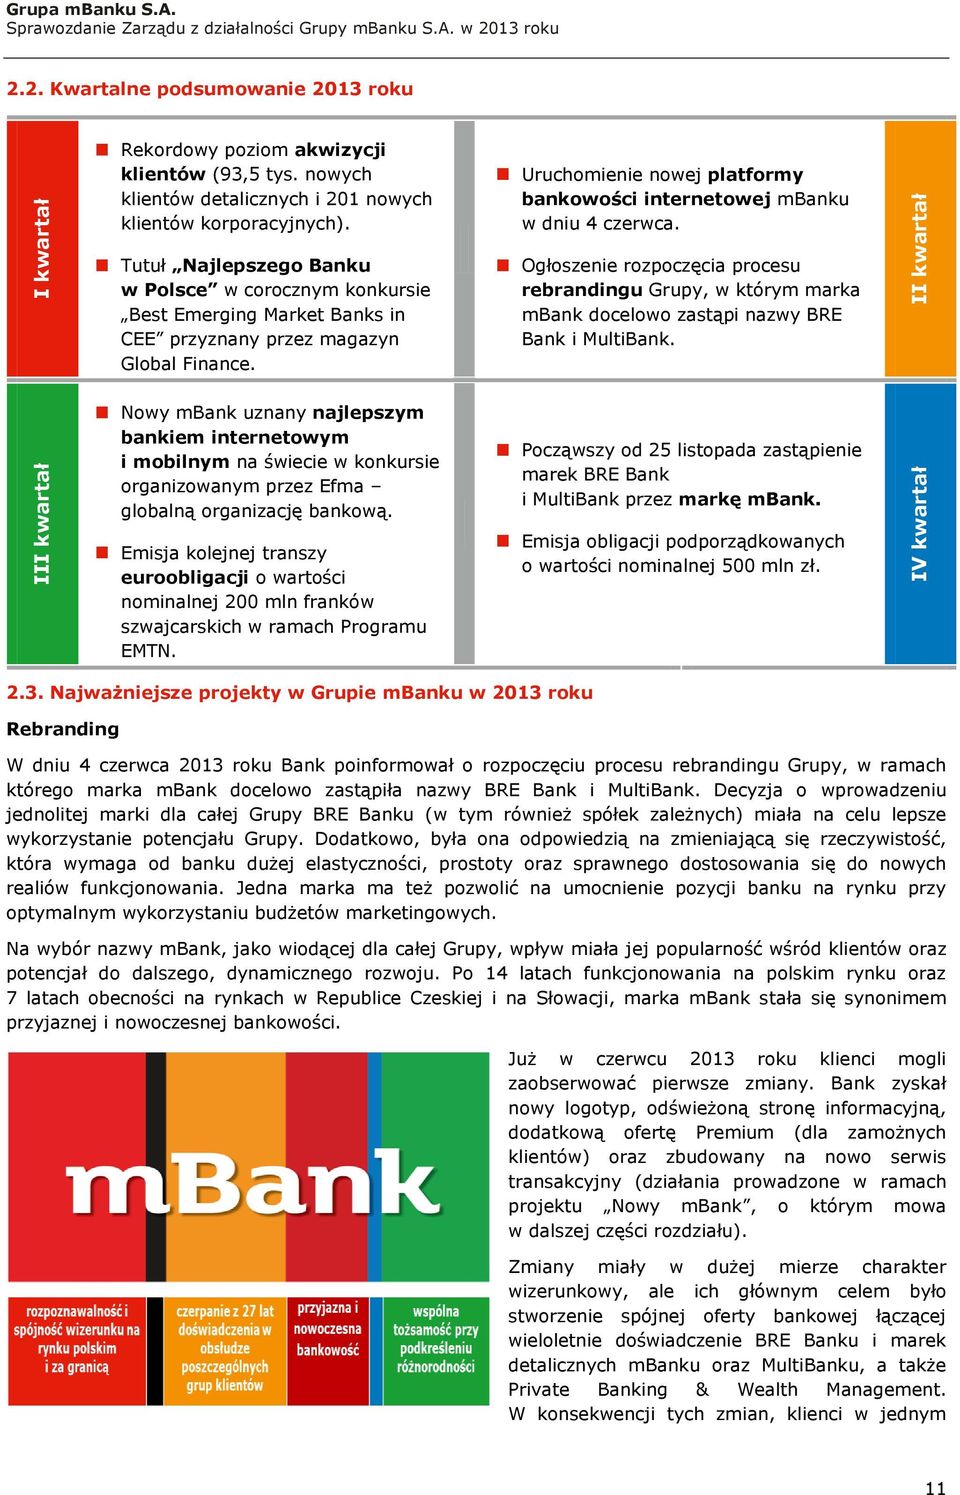 Nowy mbank uznany najlepszym bankiem internetowym i mobilnym na świecie w konkursie organizowanym przez Efma globalną organizację bankową.